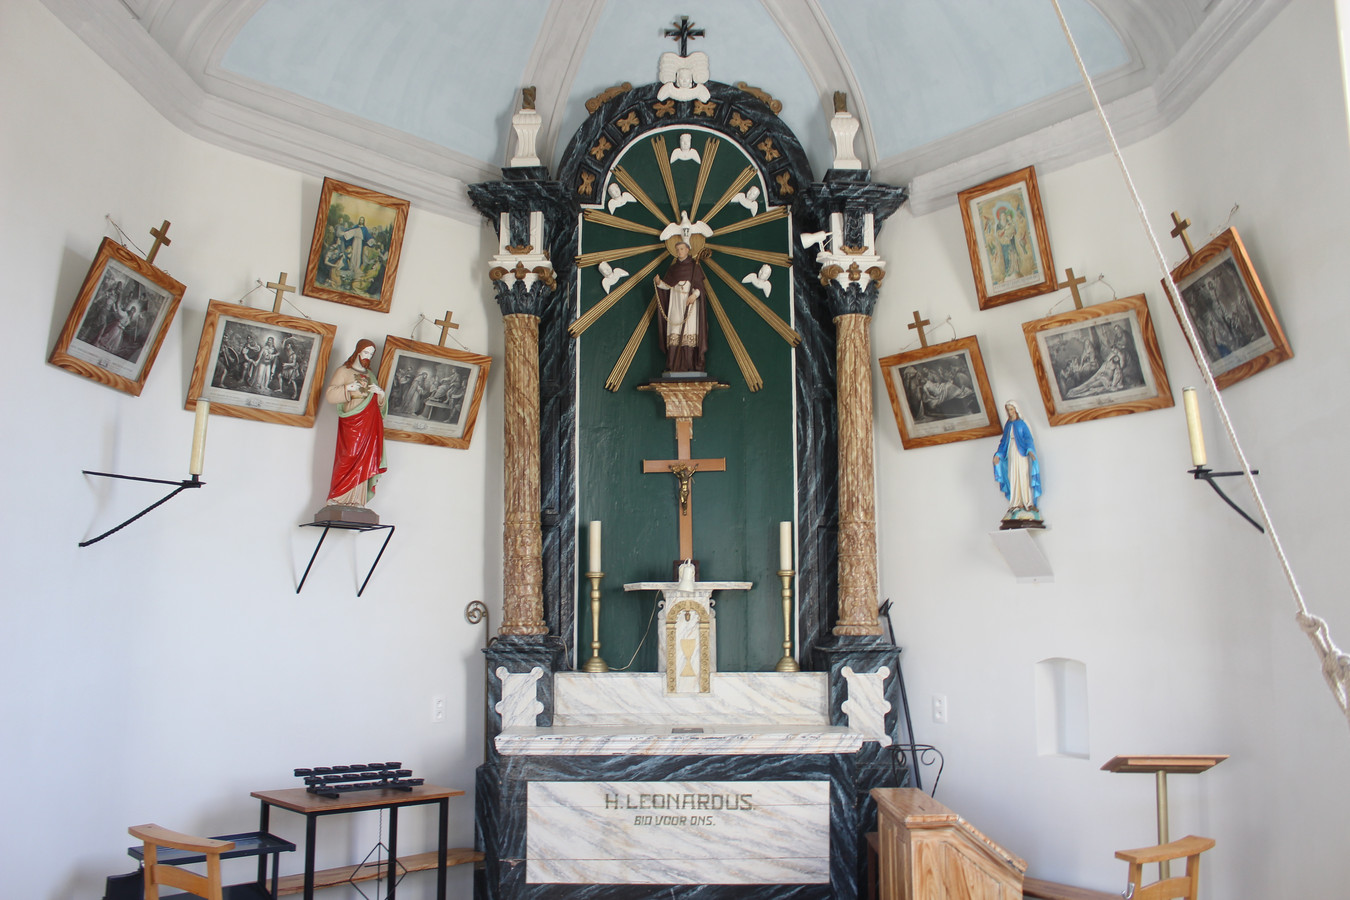 De kapel werd ook binnenin stevig gerestaureerd.